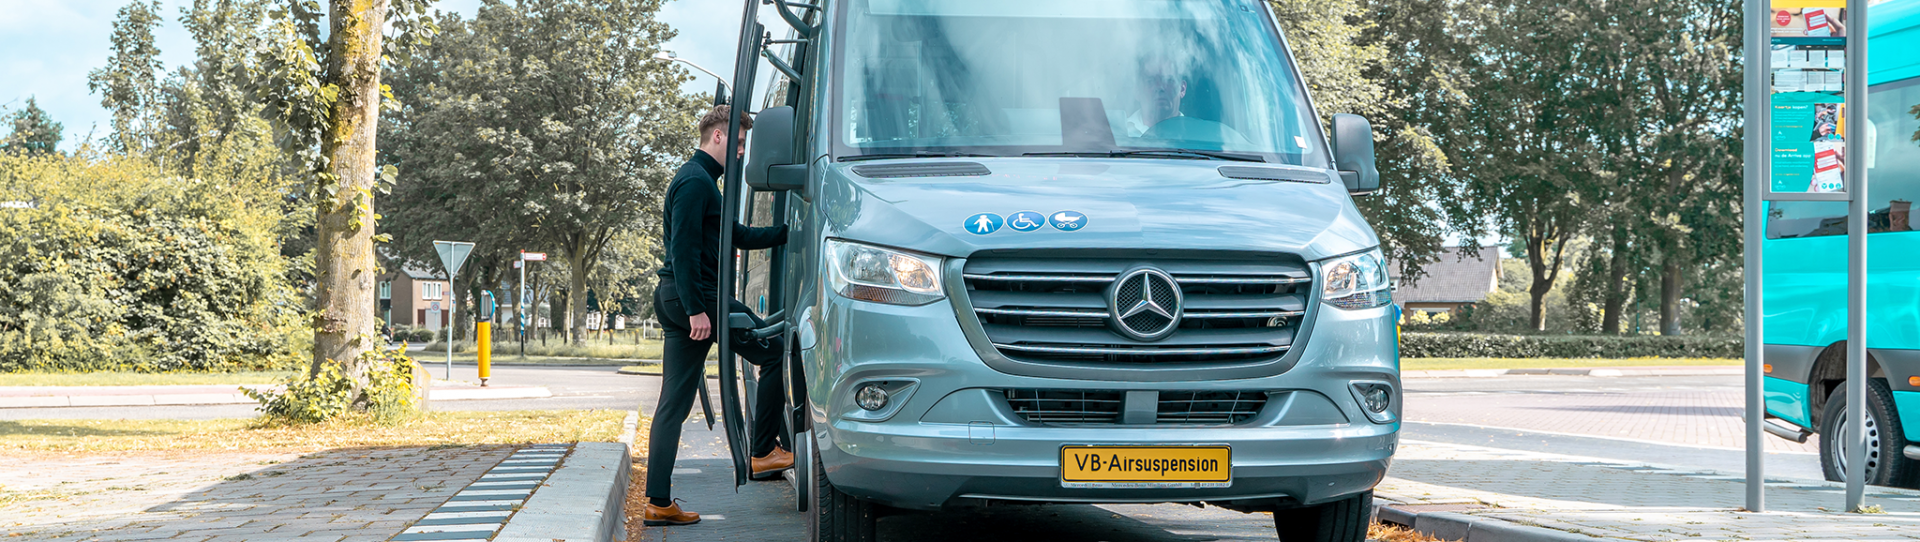 Foto: Mercedes-Benz Sprinter Minibus bij bushalte